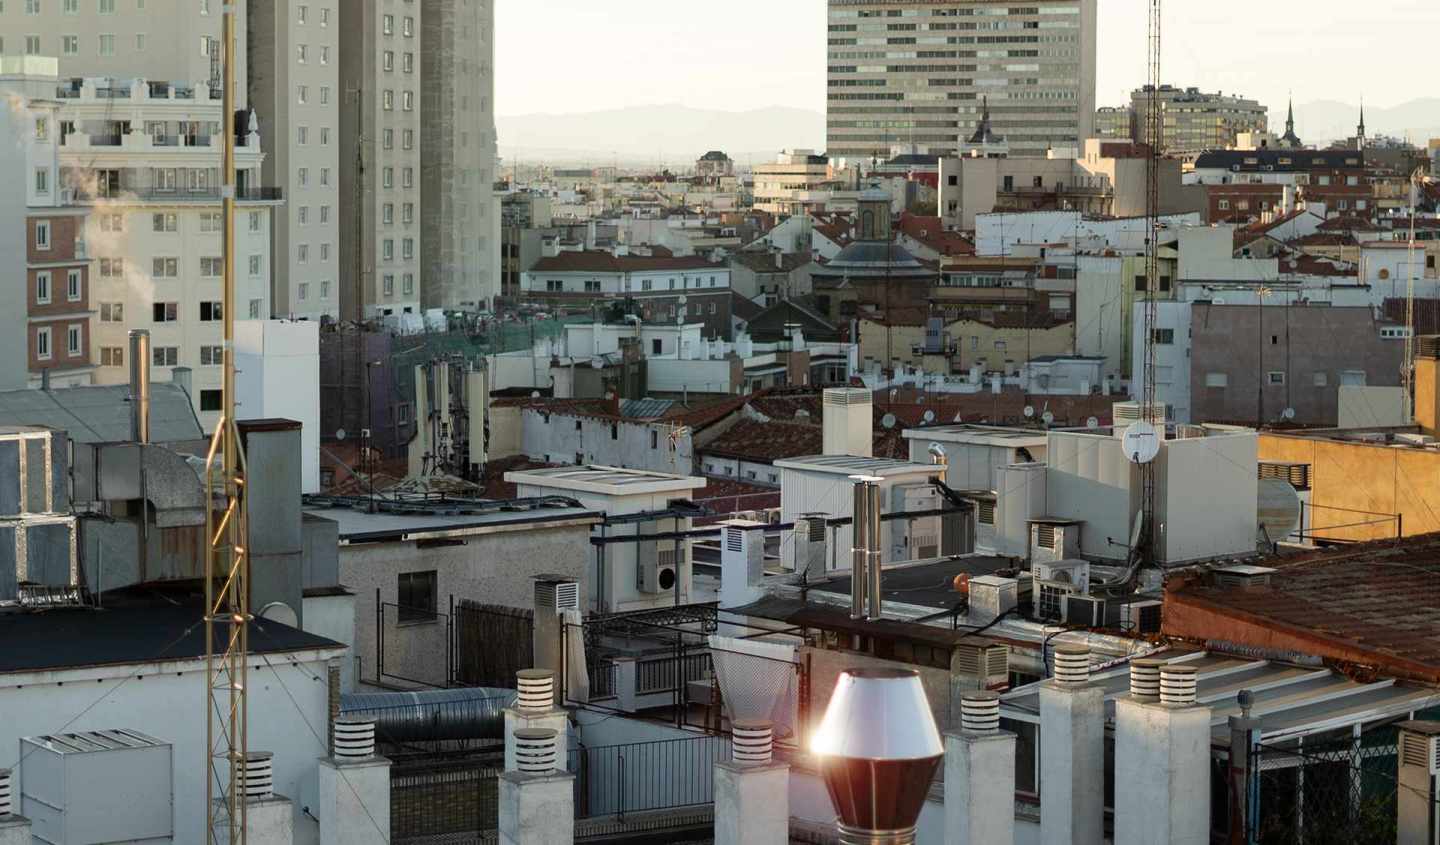 Tejados de viviendas antiguas del centro de Madrid